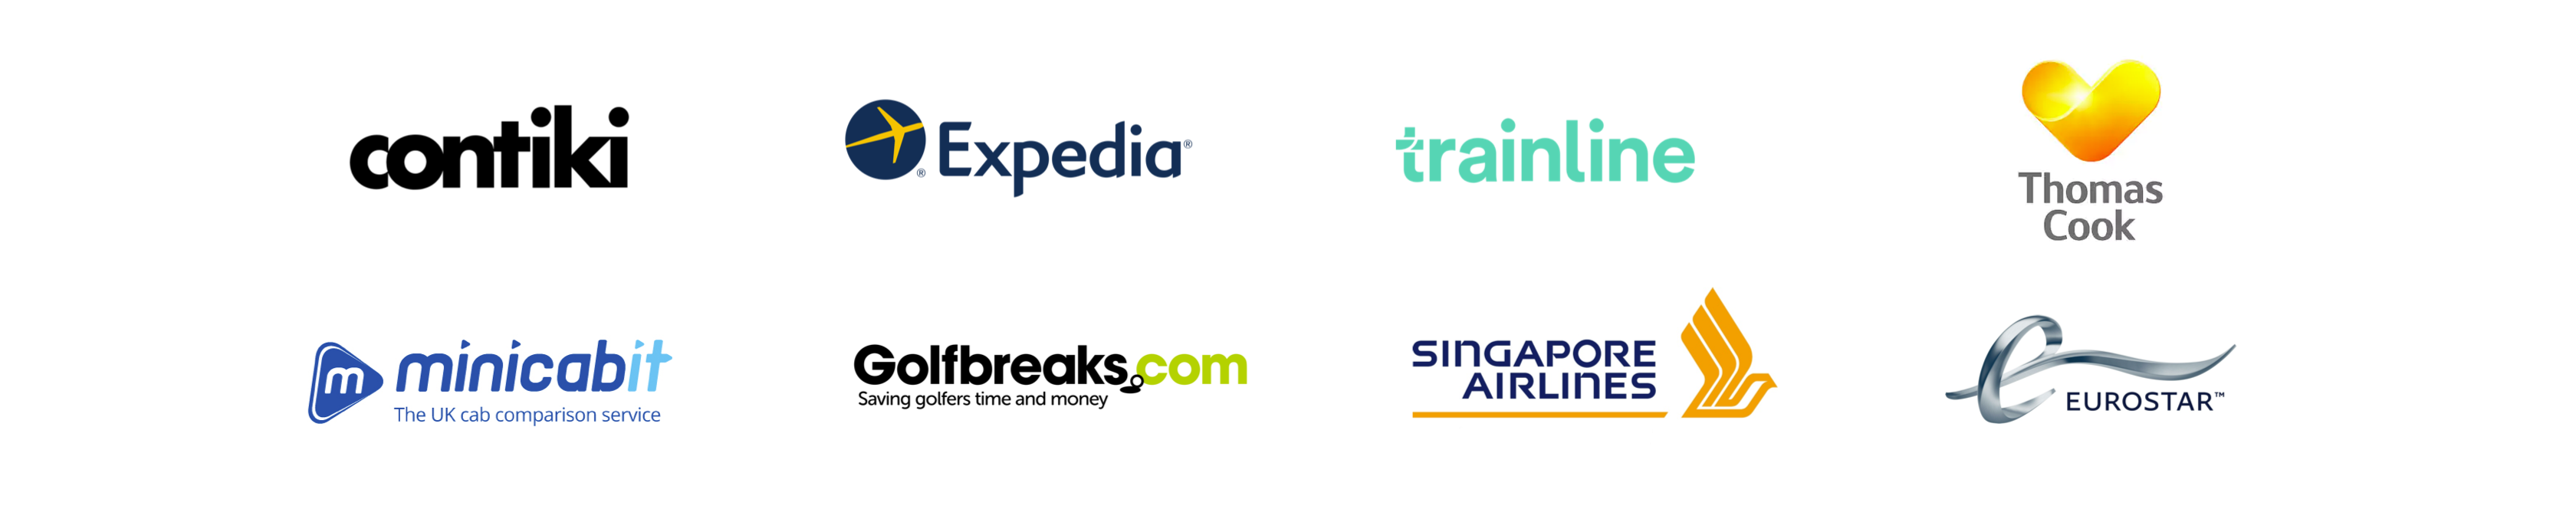 Travel-logos-4